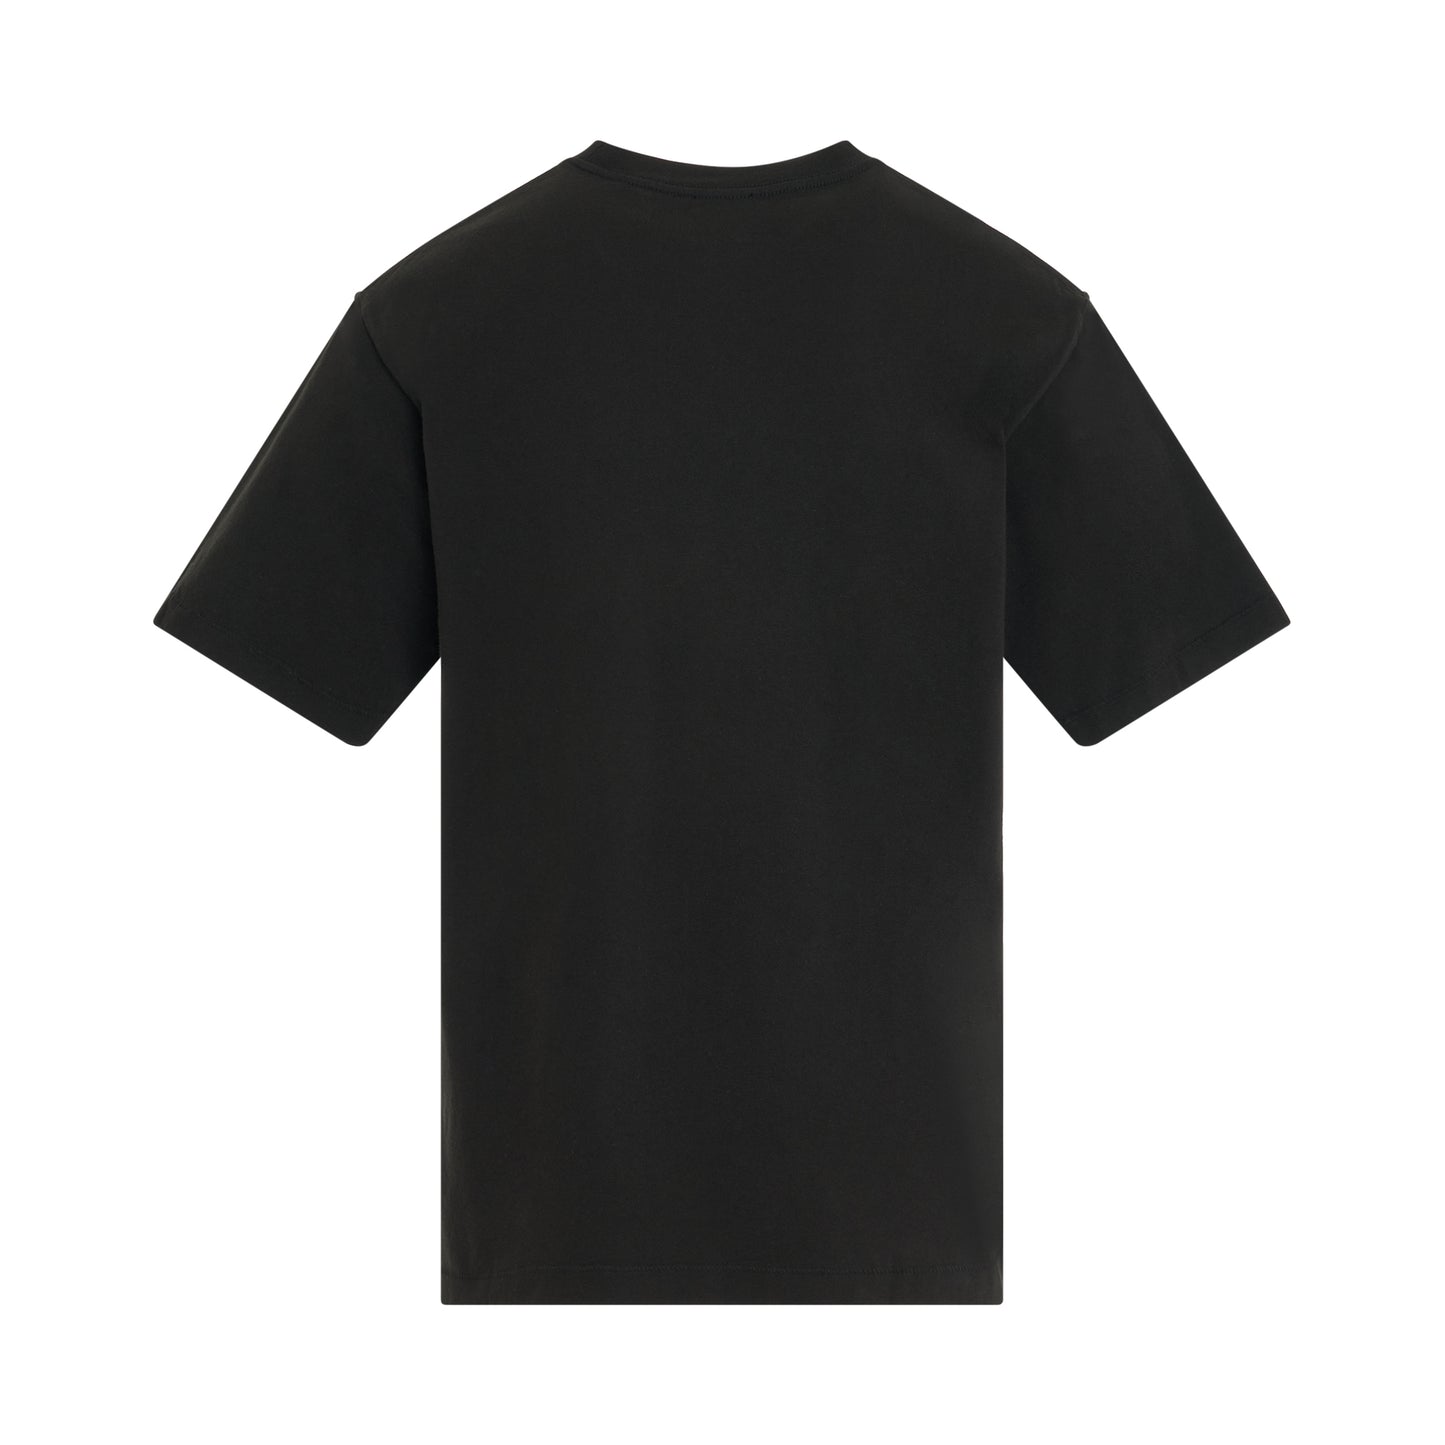 Boke Flower Classic T-Shirt in Black